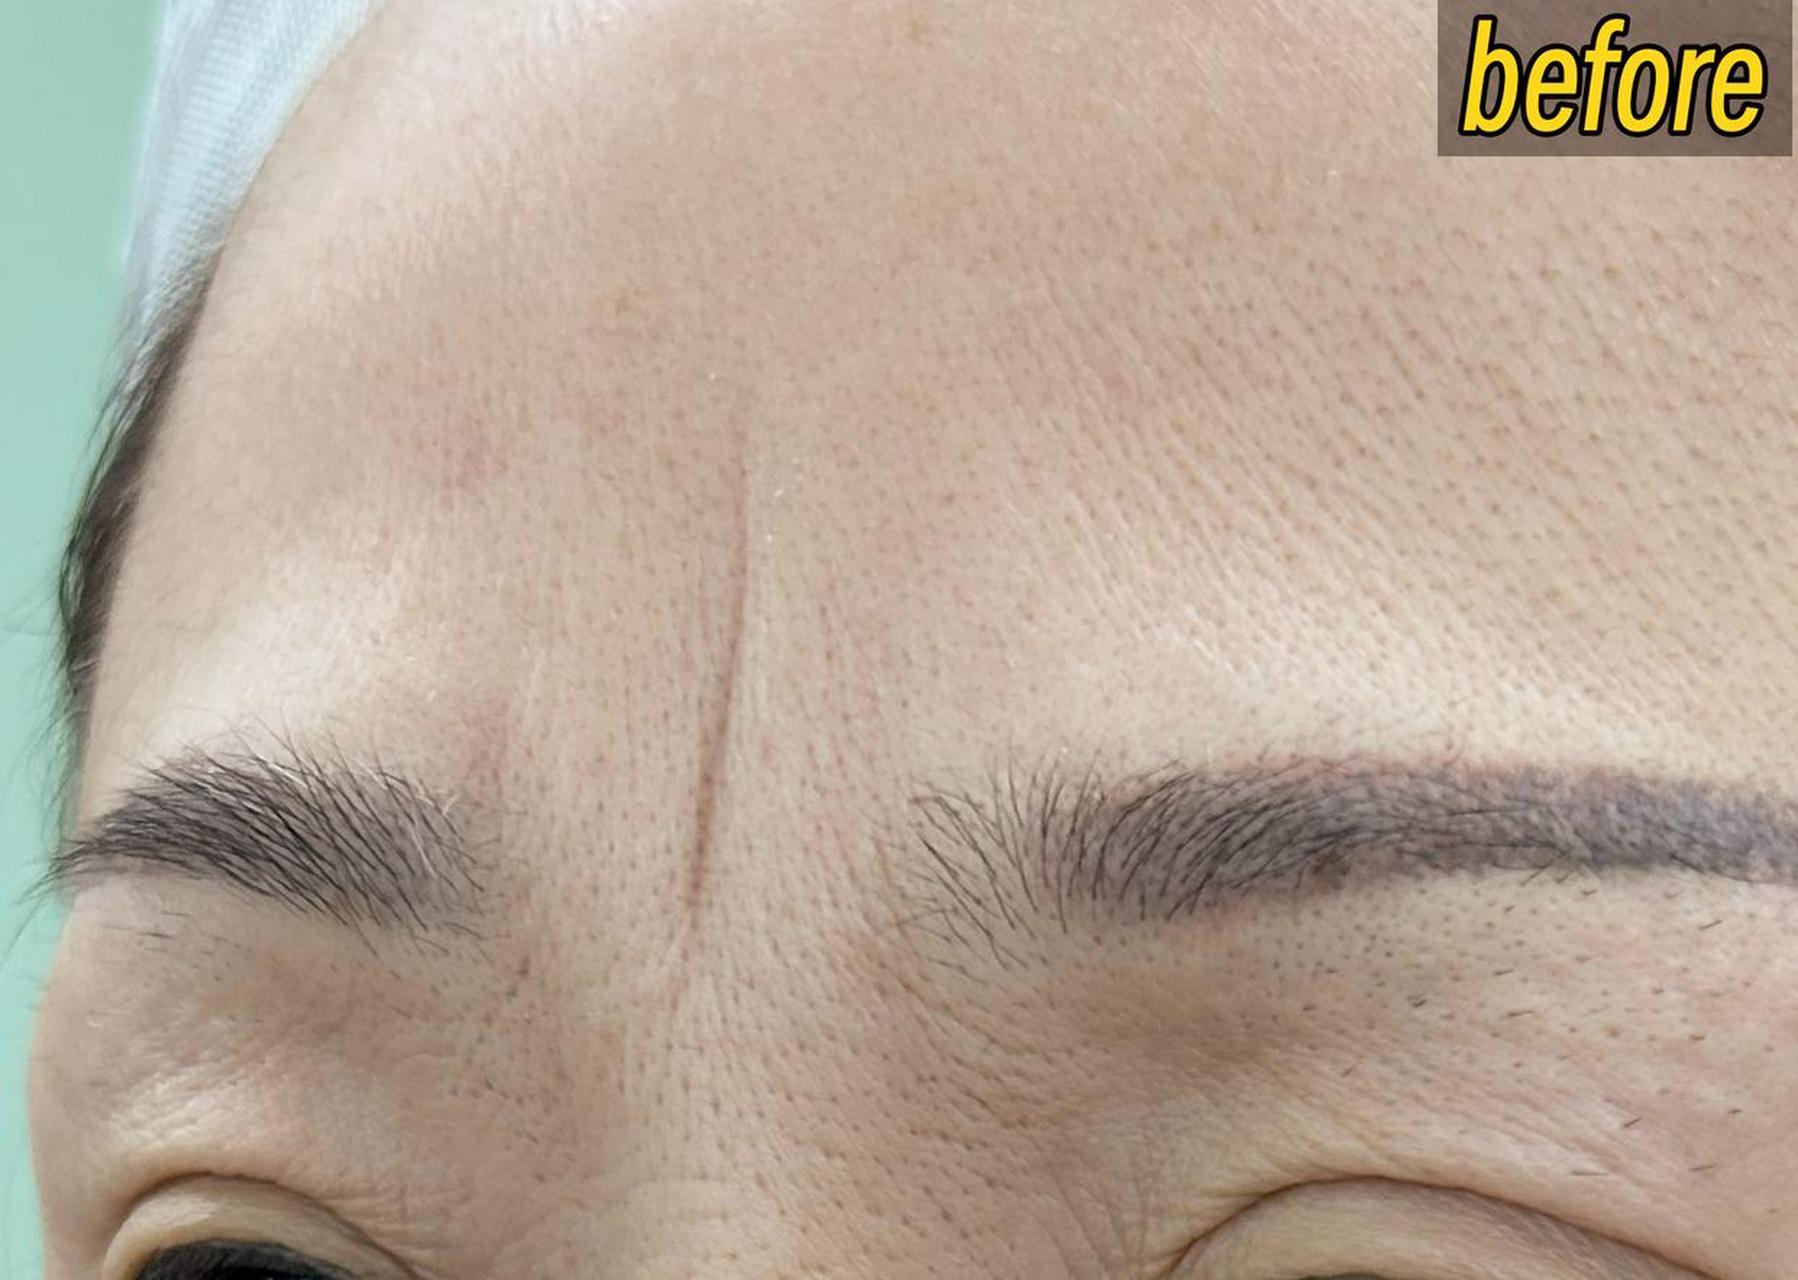 印堂悬针纹是指眉毛正中央的位置出现微小的凹陷或纹路